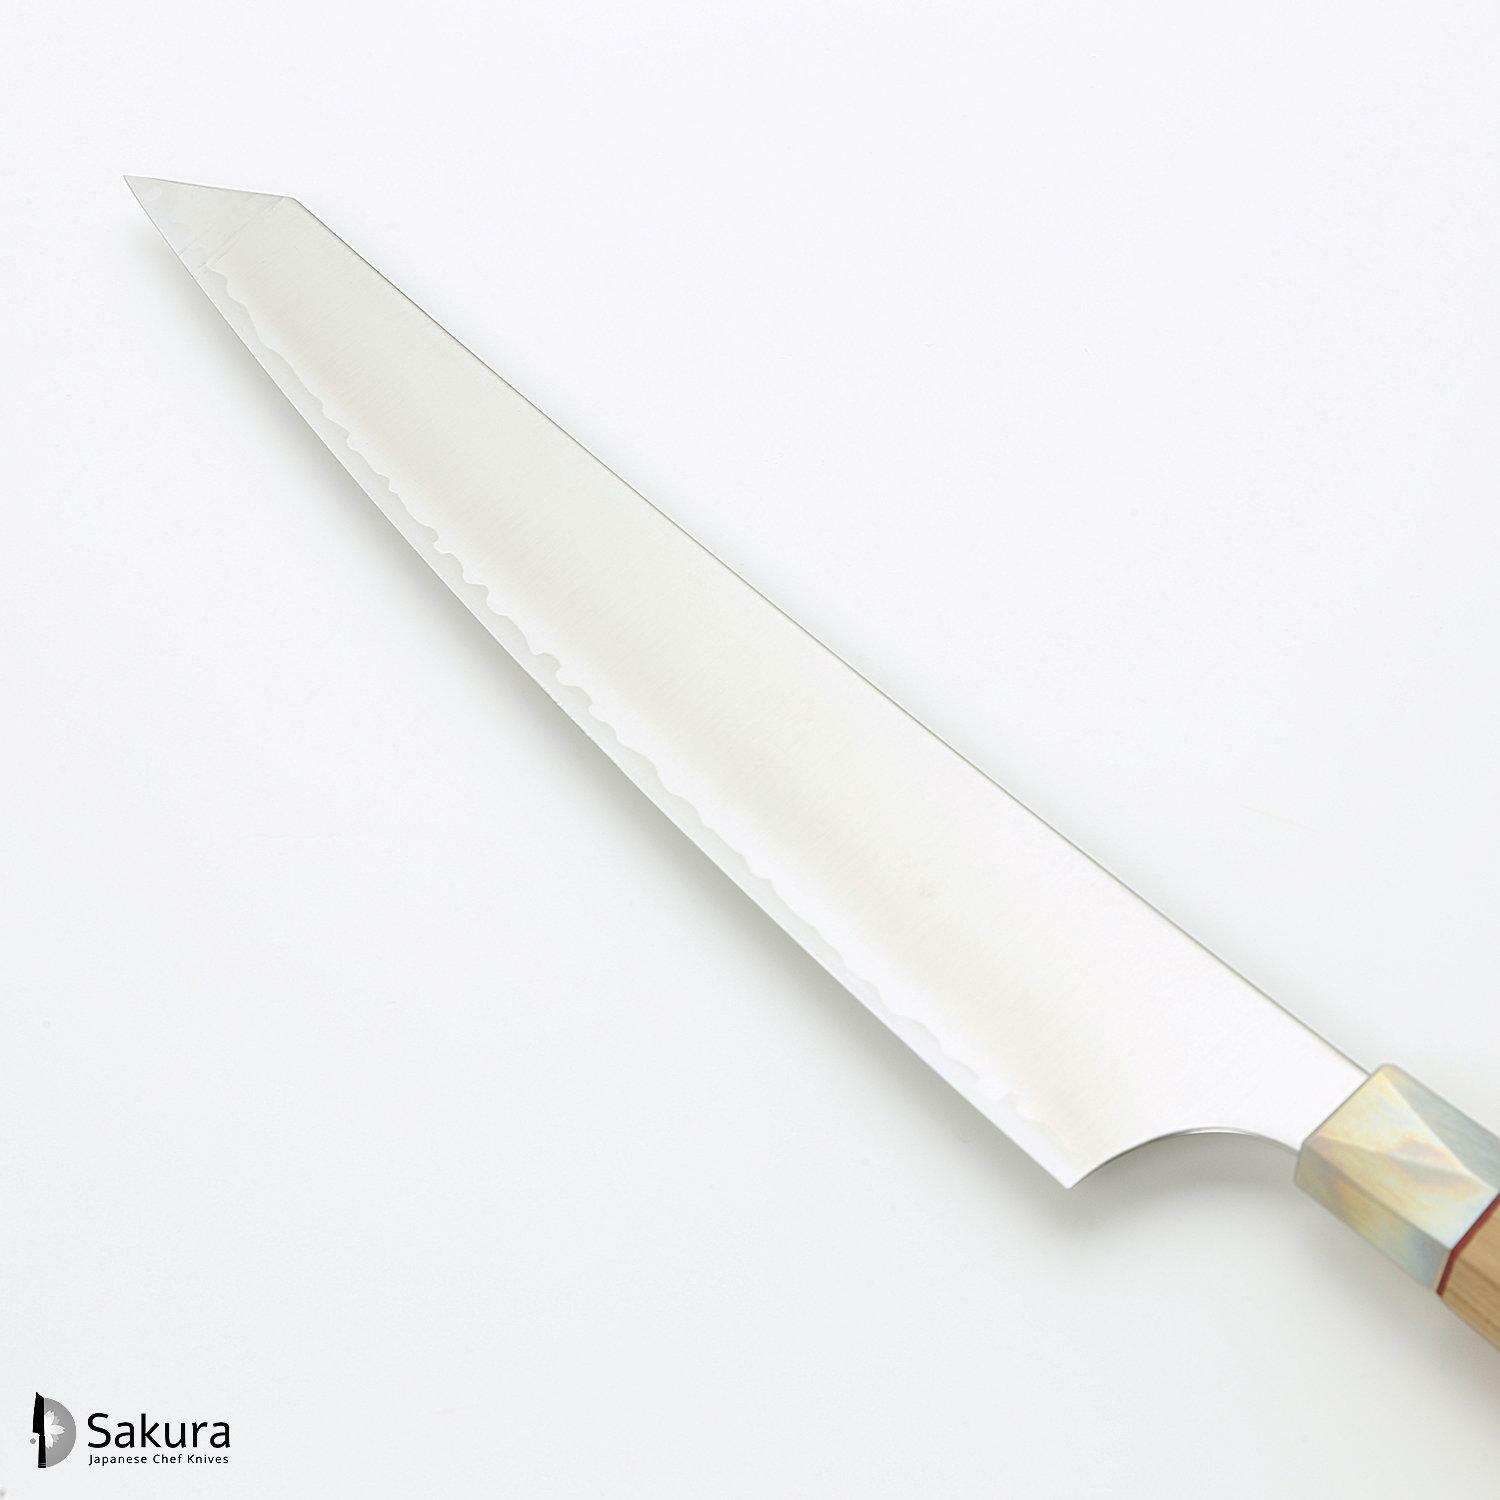 סכין חיתוך ופריסת בשר סוּגִּ’יהִיקִי 240מ״מ מחושלת בעבודת יד 3 שכבות: פלדת פחמן יפנית מתקדמת מסוג Aogami Super עטופה פלדת אל-חלד גימור מט מלוטש מקוסטה זאנמאיי יפן ZBX-5010B